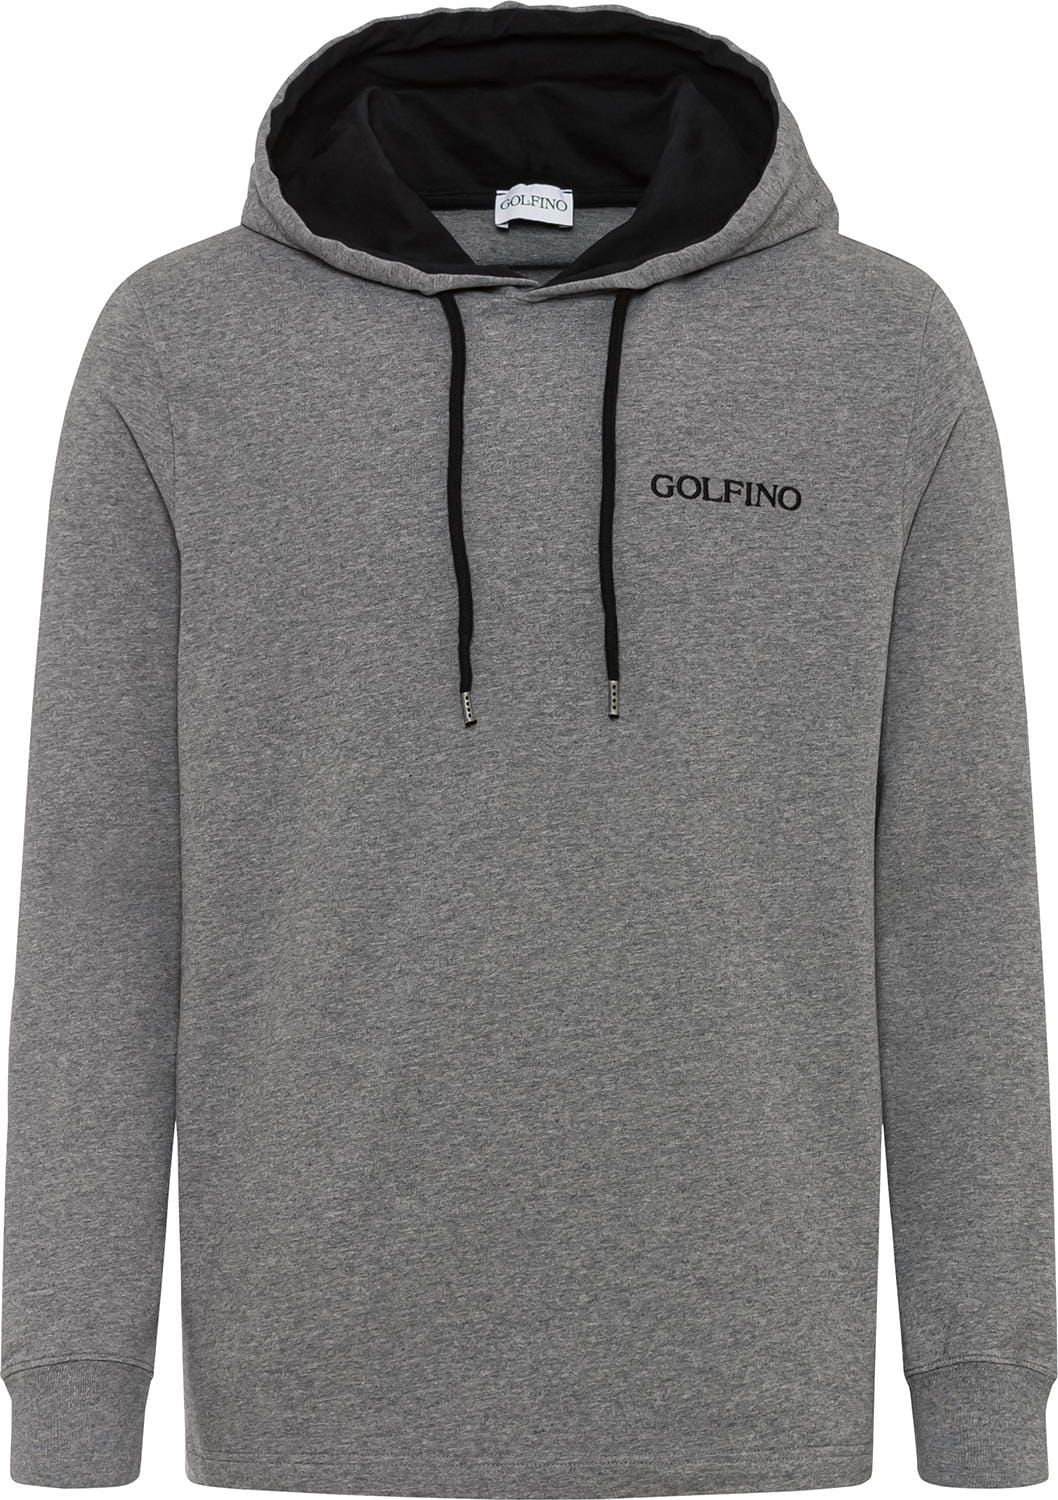 Golfino Soft Hoodie Sweater, grey